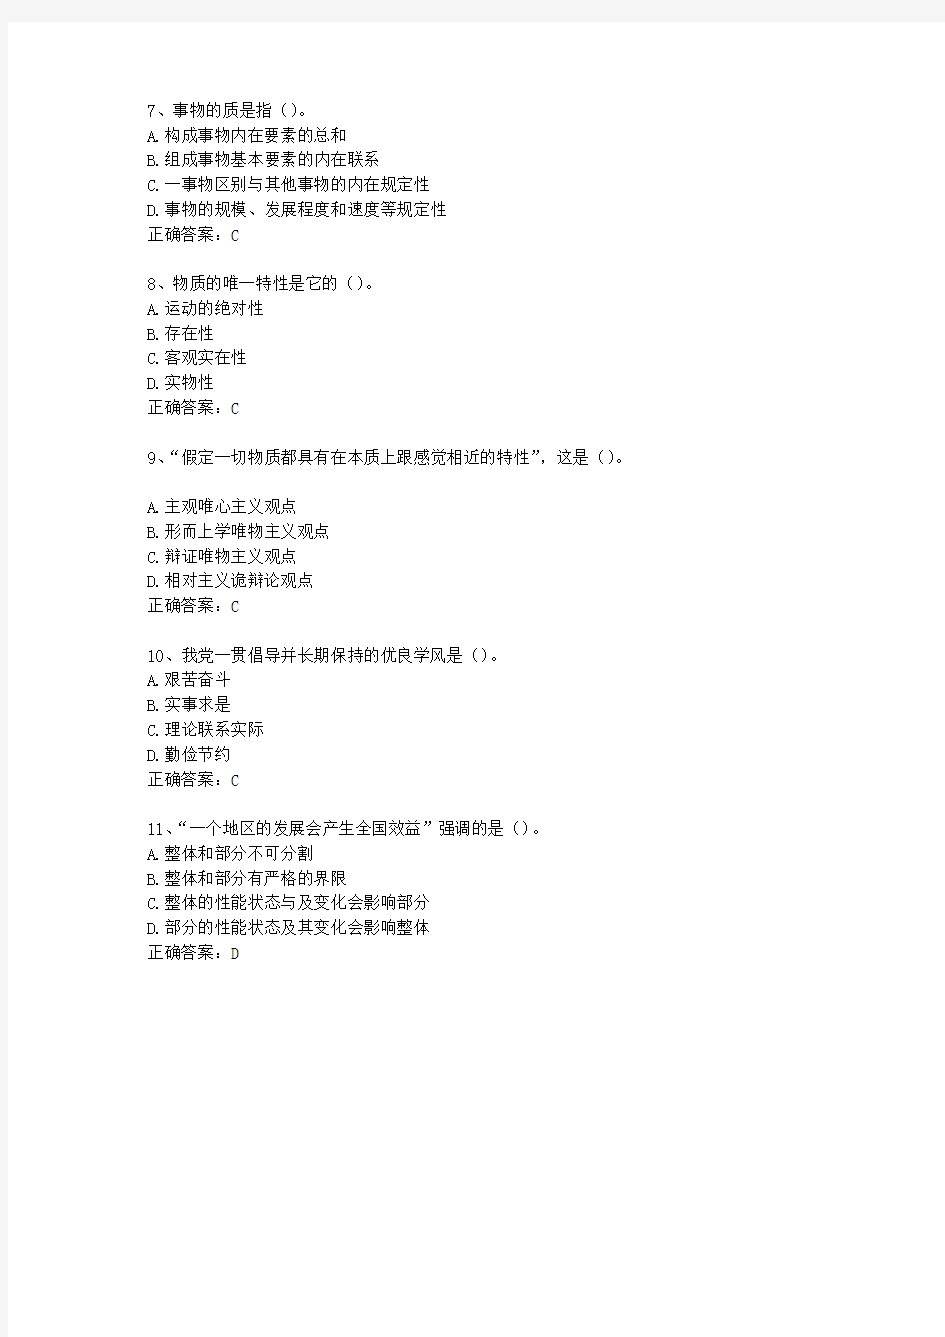 2013四川省教师招聘考试公共基础知识(必备资料)